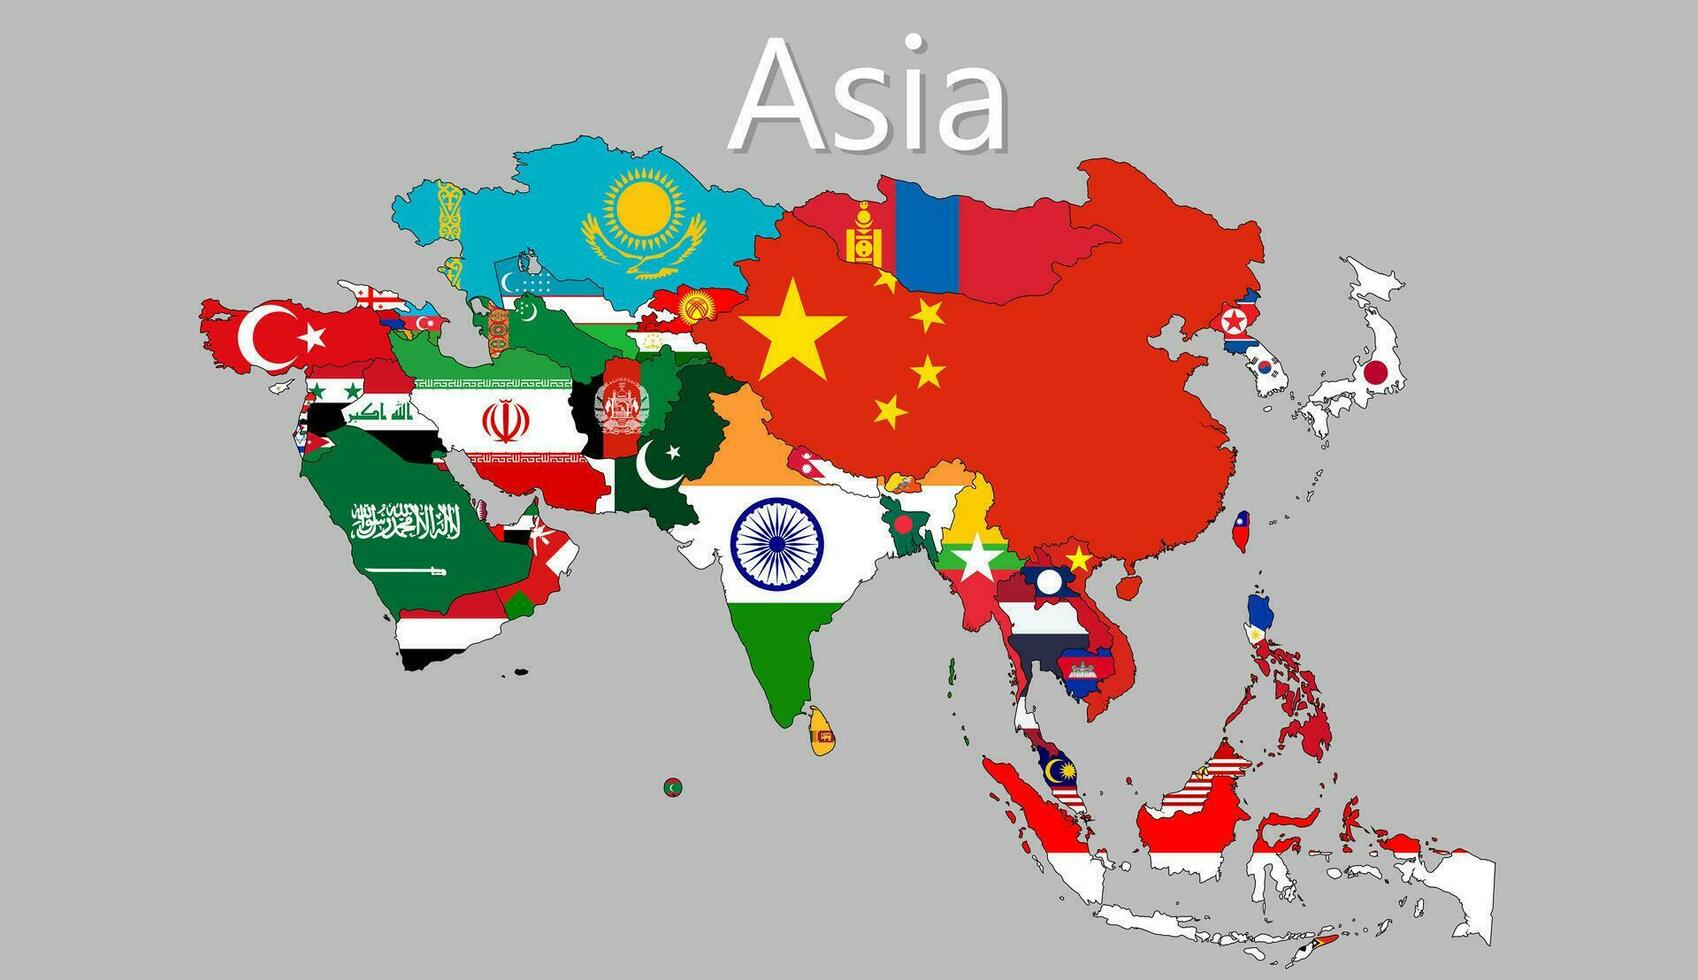 Vektor Karte von Asien trennen Schichten und Namen deutlich, einfach zu verwenden, Illustration.